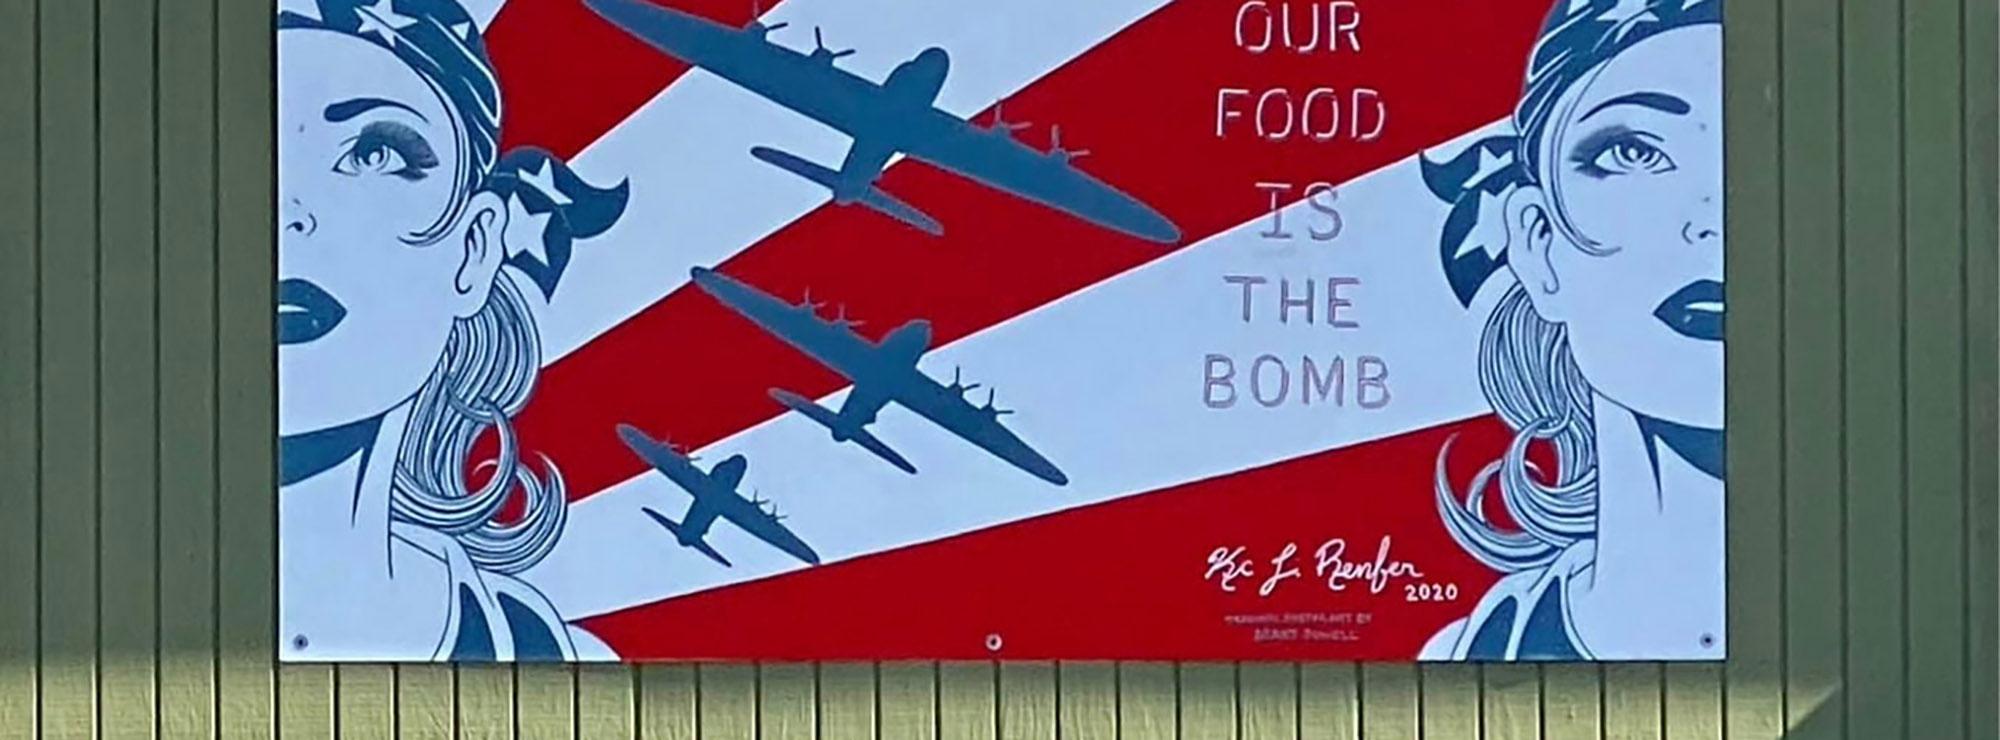 Bomber Restaurant, Ypsilanti, Michigan